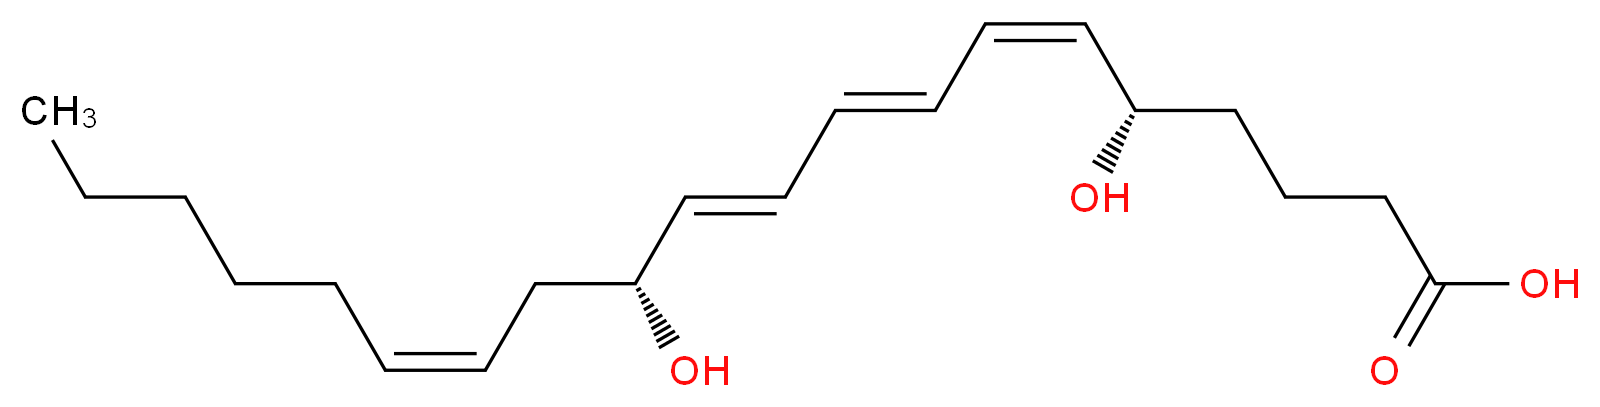 Leukotriene B4_Molecular_structure_CAS_71160-24-2)